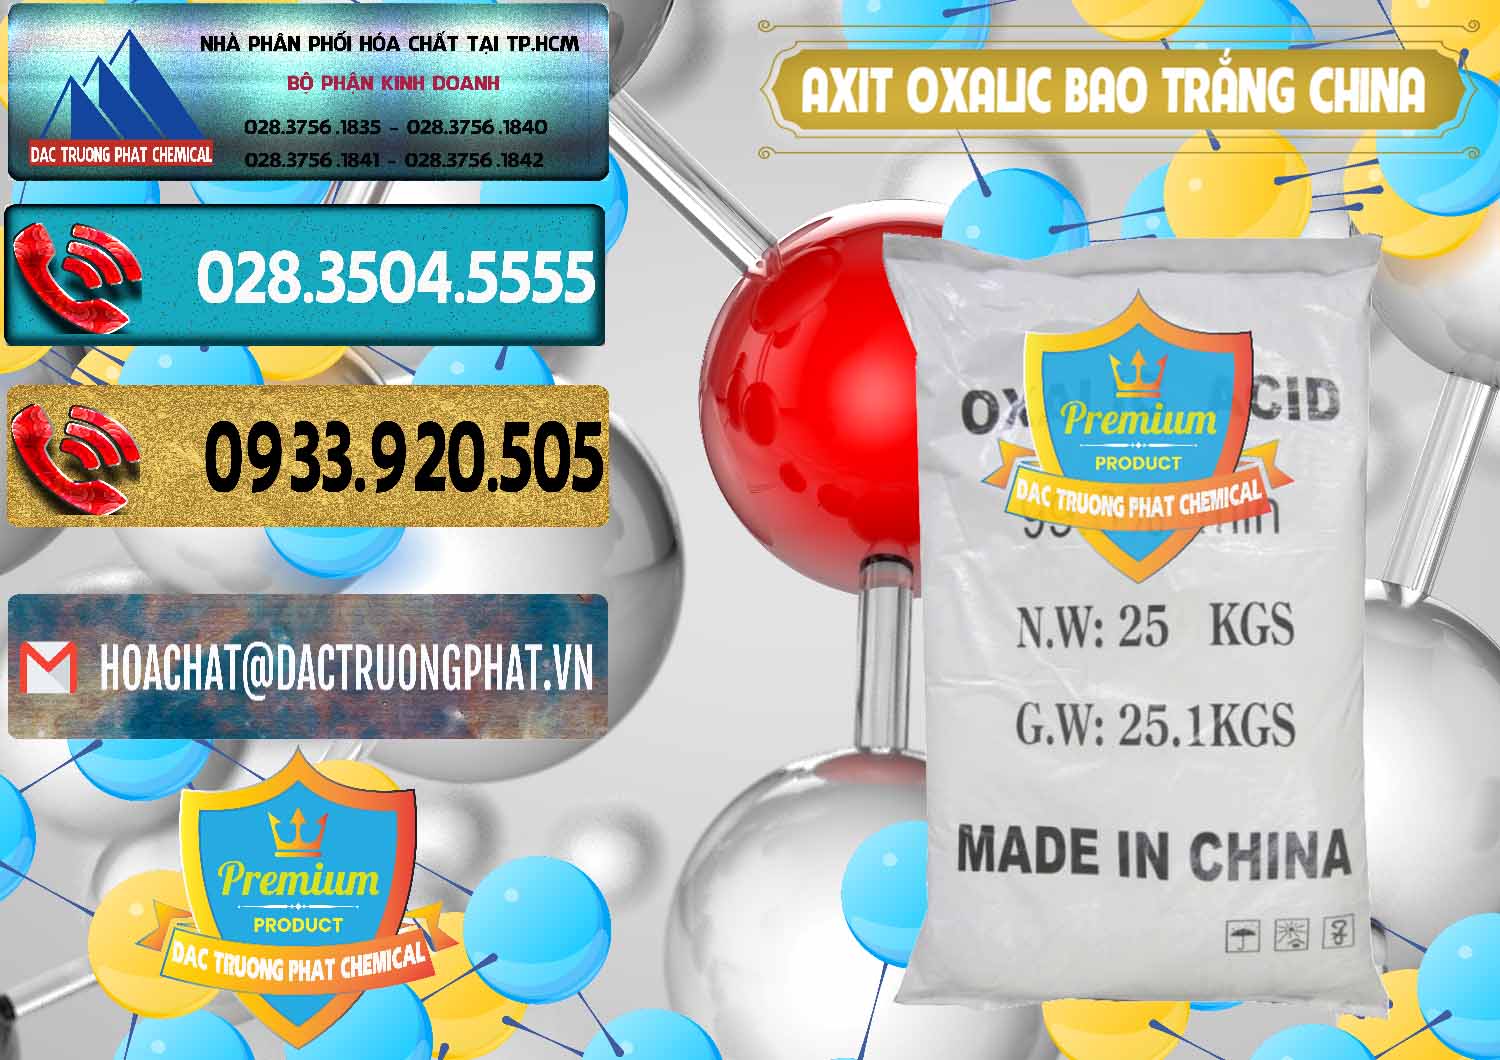 Nơi bán & phân phối Acid Oxalic – Axit Oxalic 99.6% Bao Trắng Trung Quốc China - 0270 - Đơn vị chuyên cung cấp ( nhập khẩu ) hóa chất tại TP.HCM - hoachatdetnhuom.com